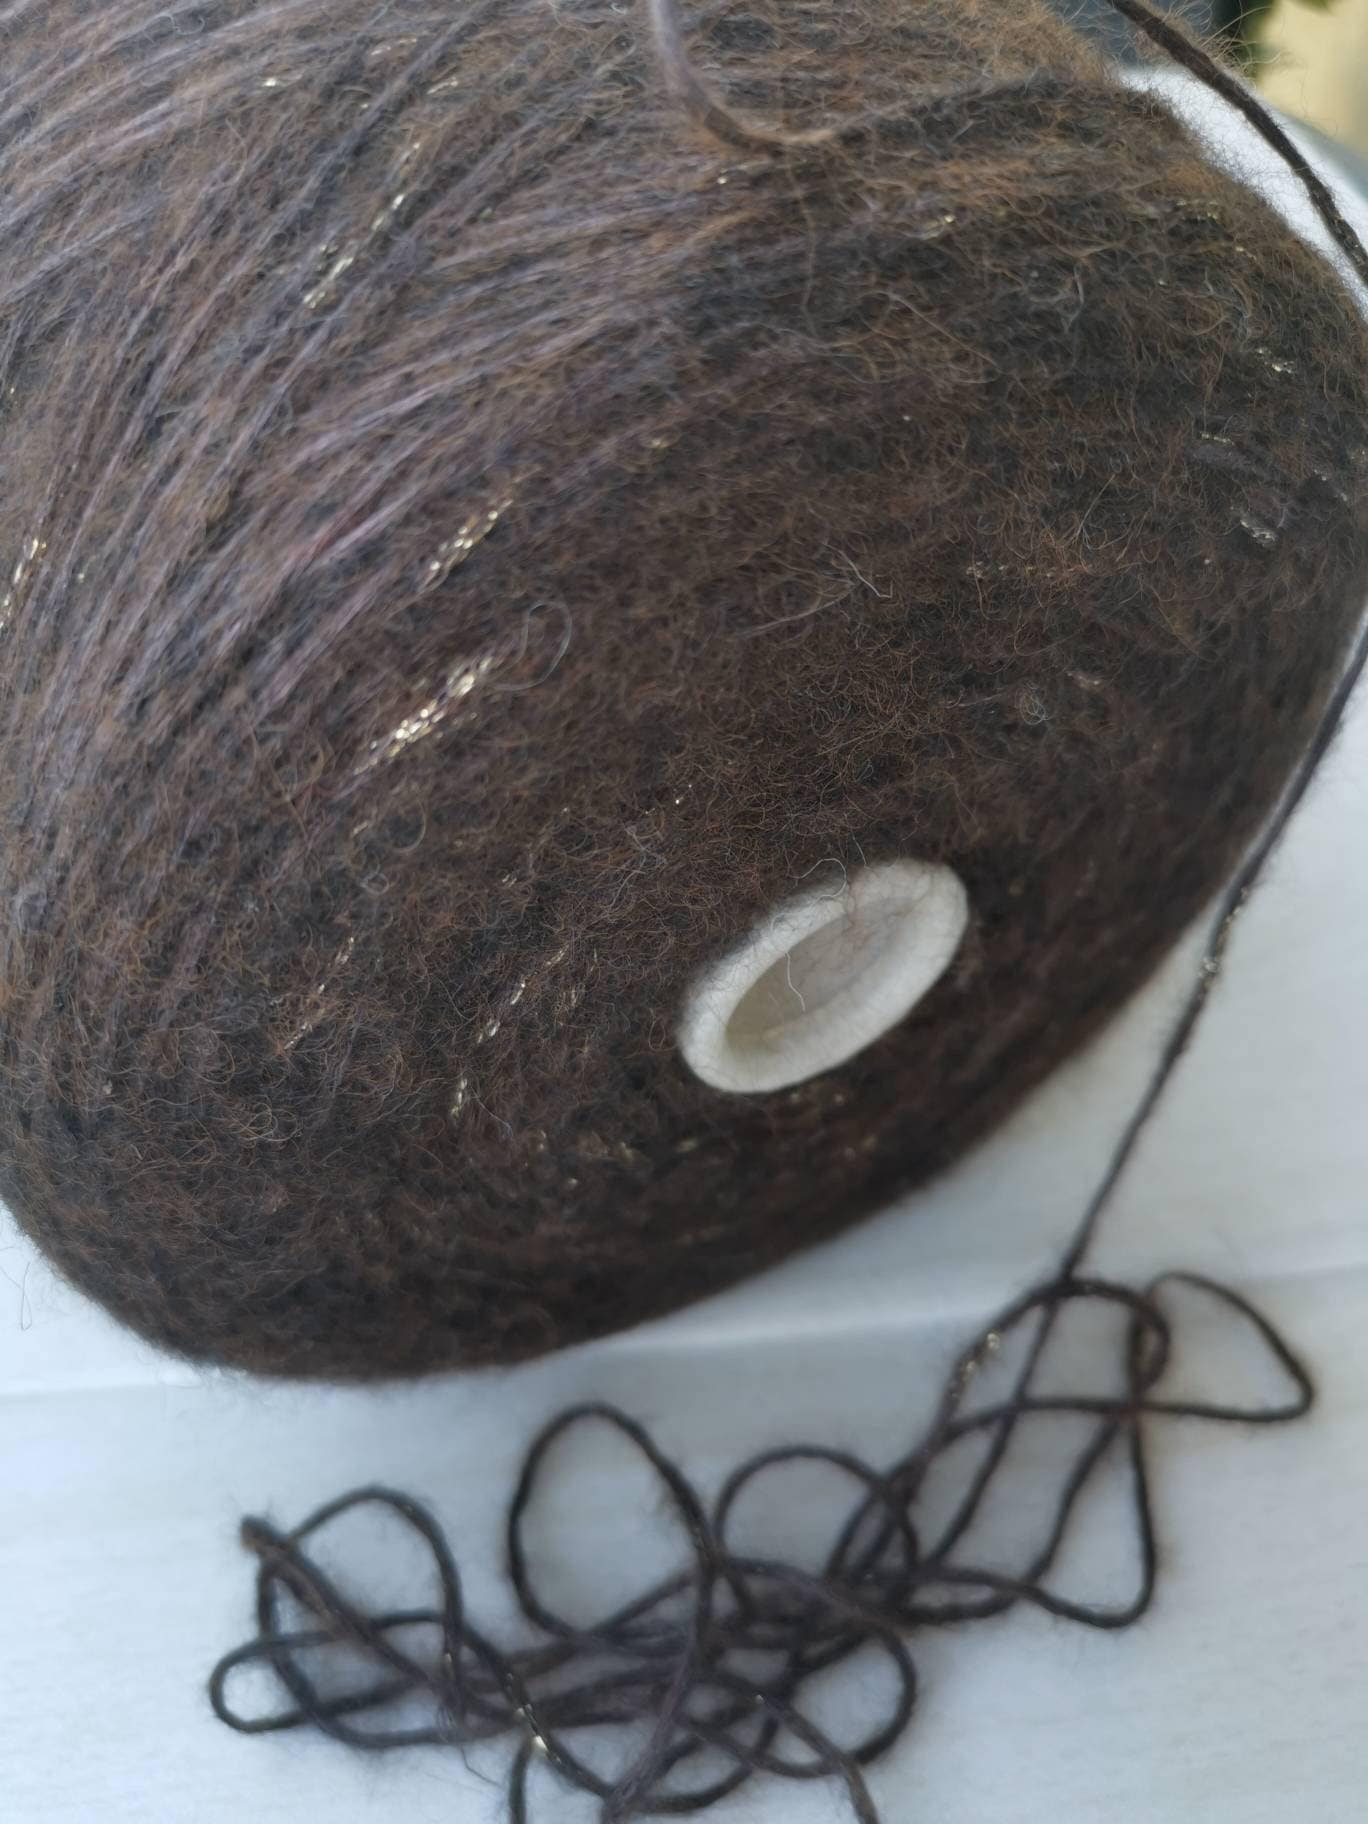 Wired Yarn Trim - Fluffy Brown Yarn Fur Craft Cord, 3 Yds. – Smile